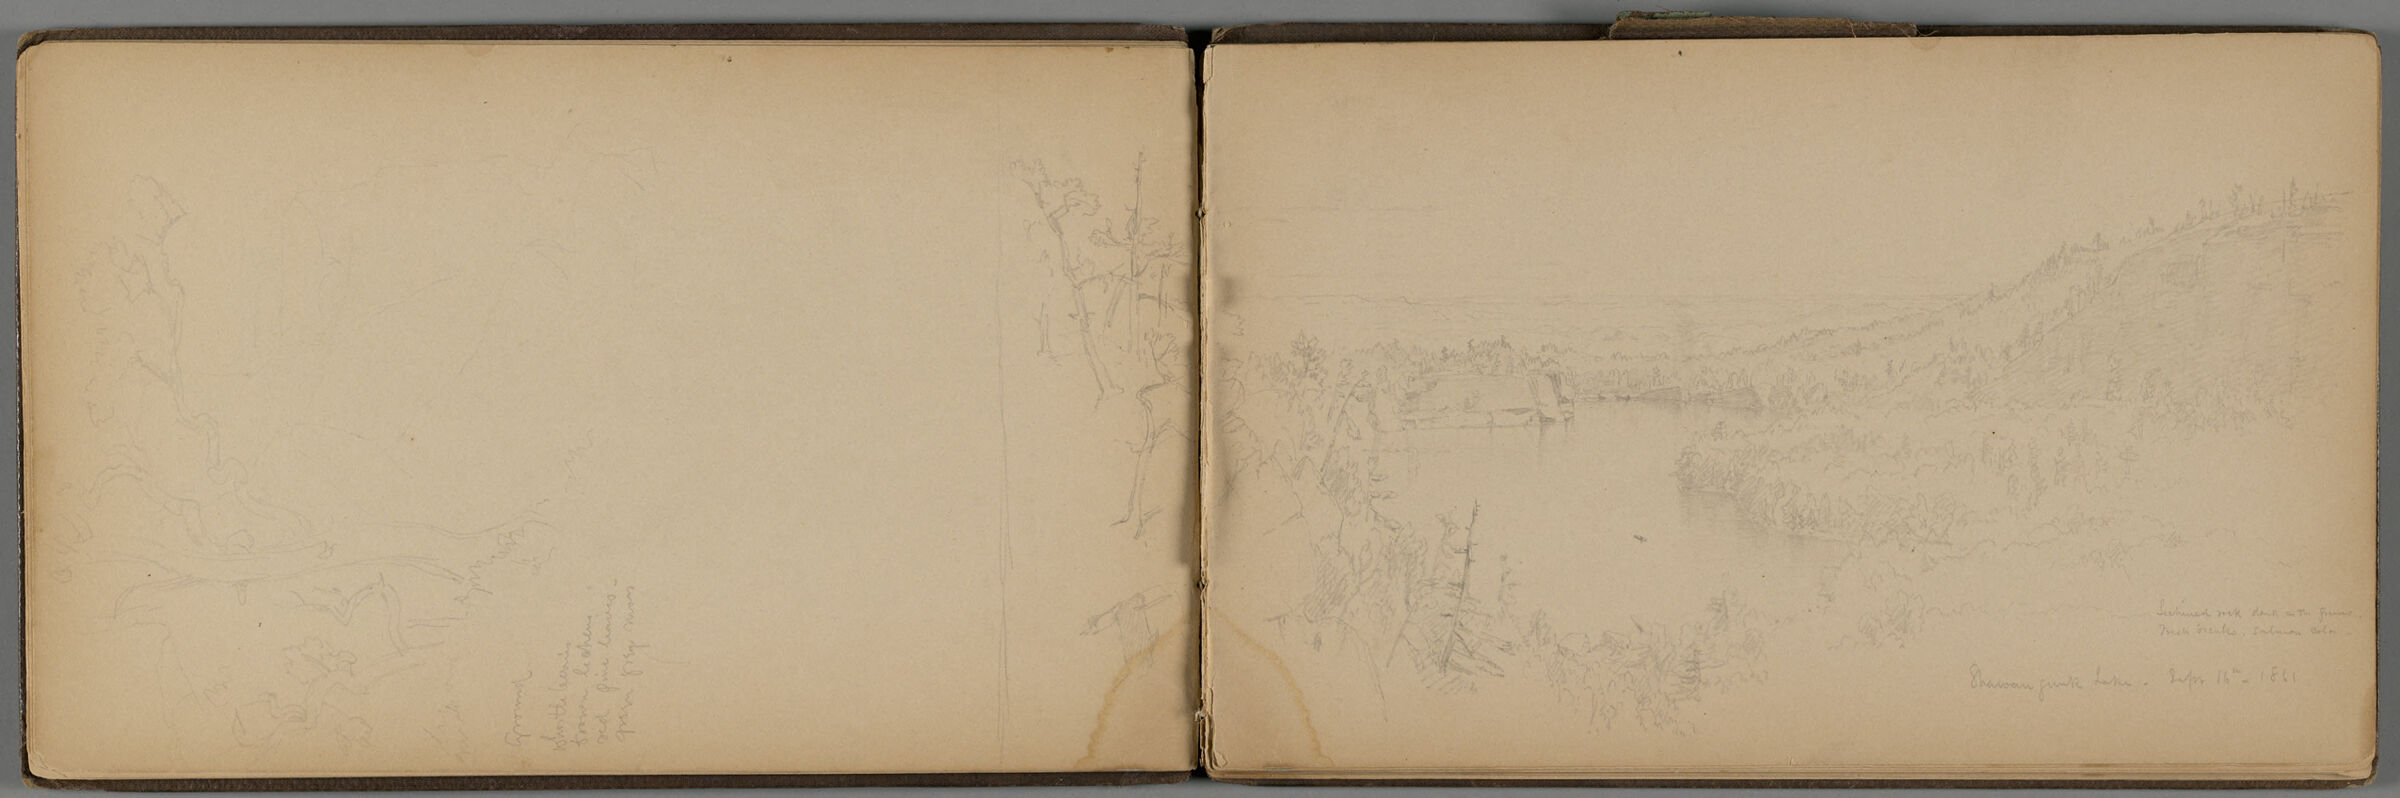 Shawangunk Lake, New York (Recto And Verso)